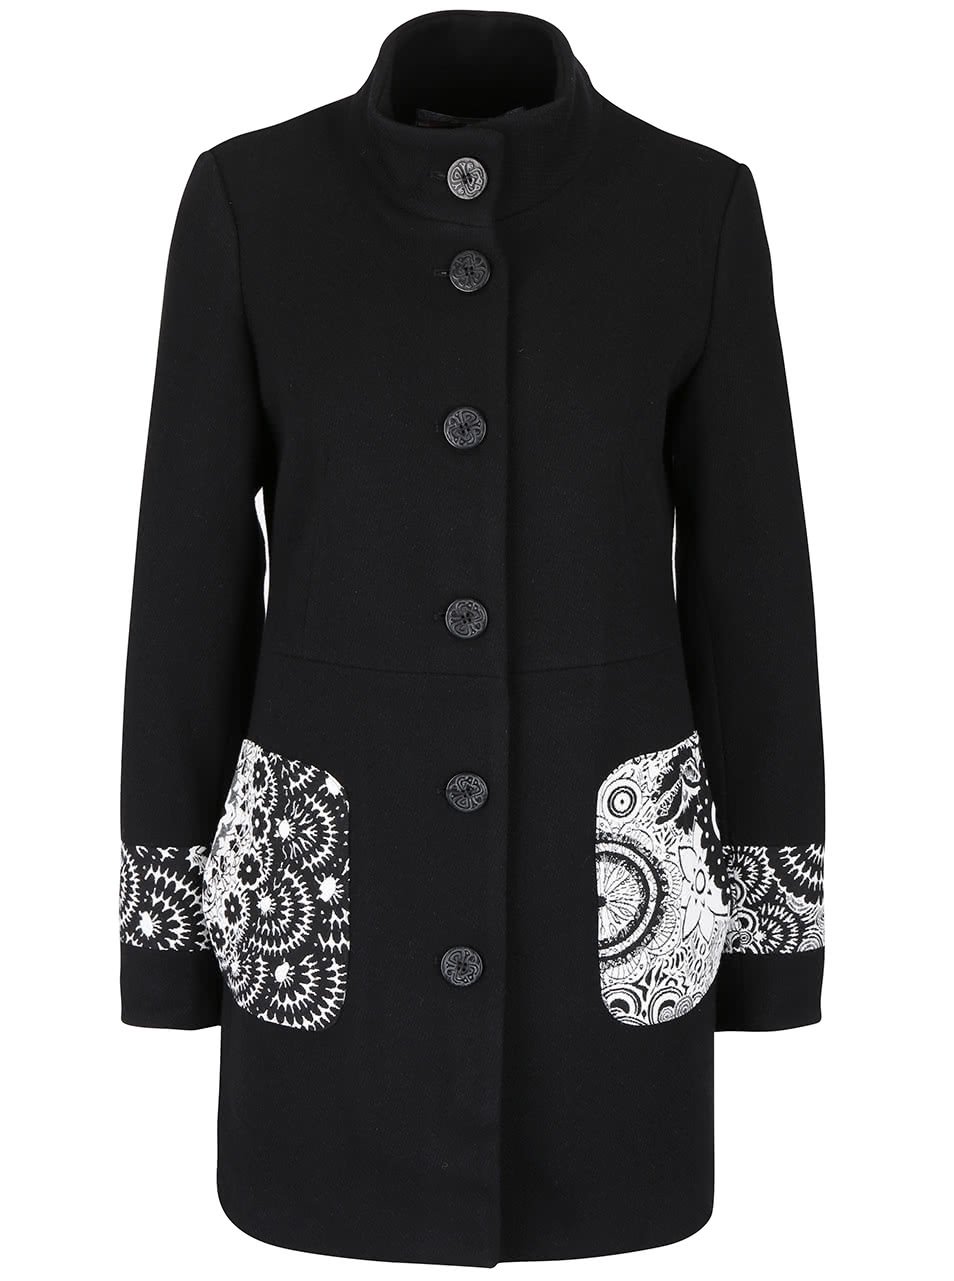 Černý kabát s detaily v krémové barvě Desigual Malta